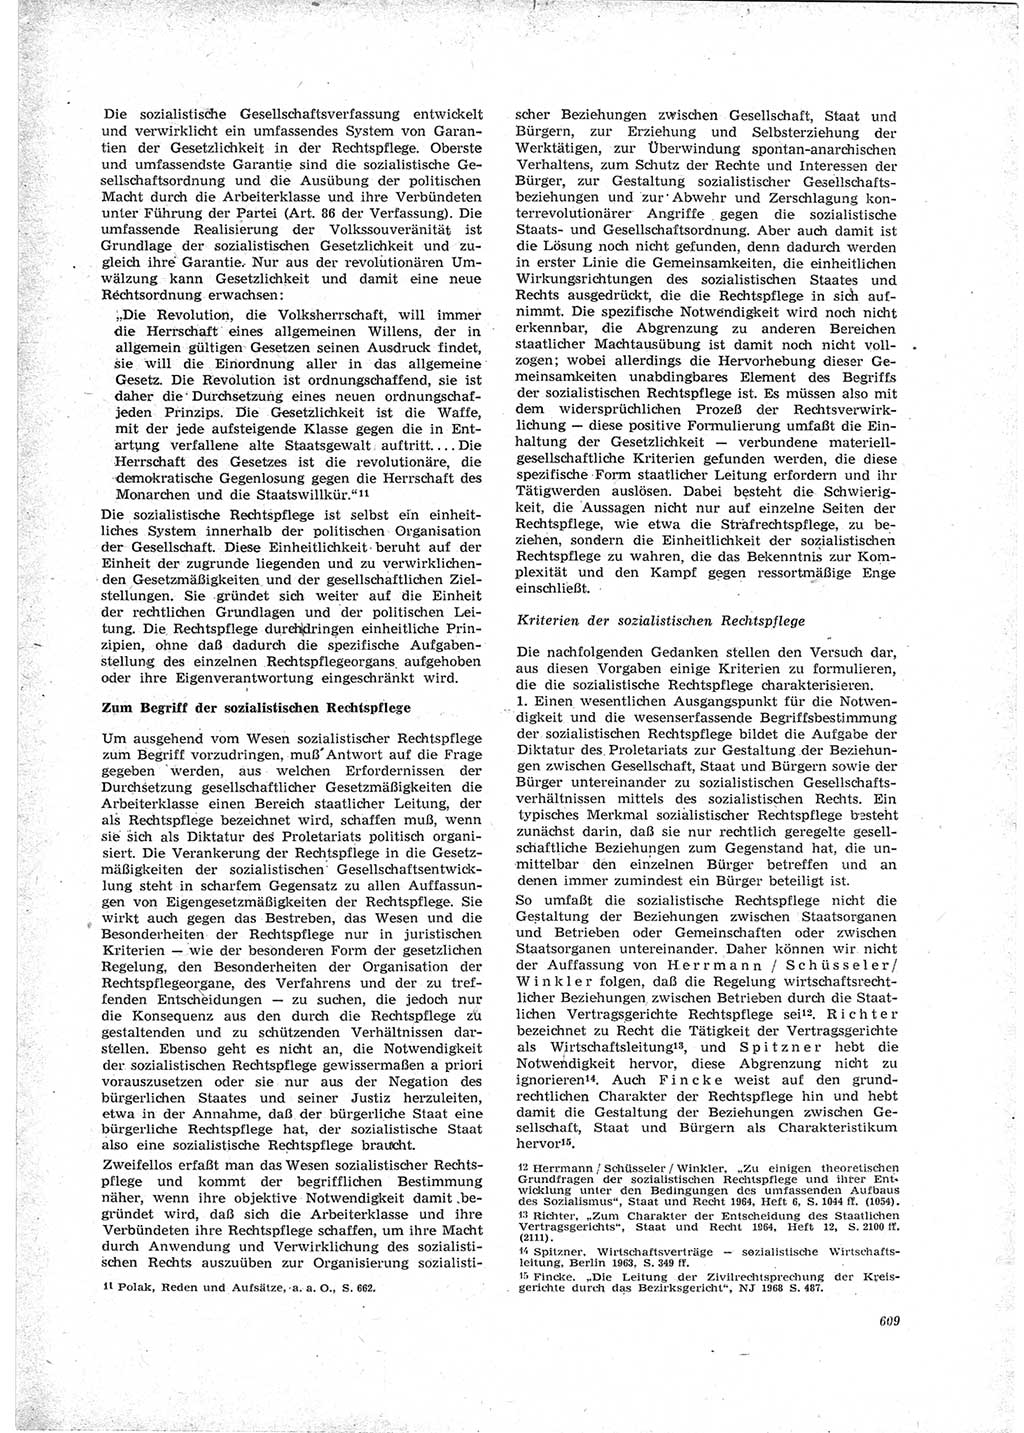 Neue Justiz (NJ), Zeitschrift für Recht und Rechtswissenschaft [Deutsche Demokratische Republik (DDR)], 23. Jahrgang 1969, Seite 609 (NJ DDR 1969, S. 609)